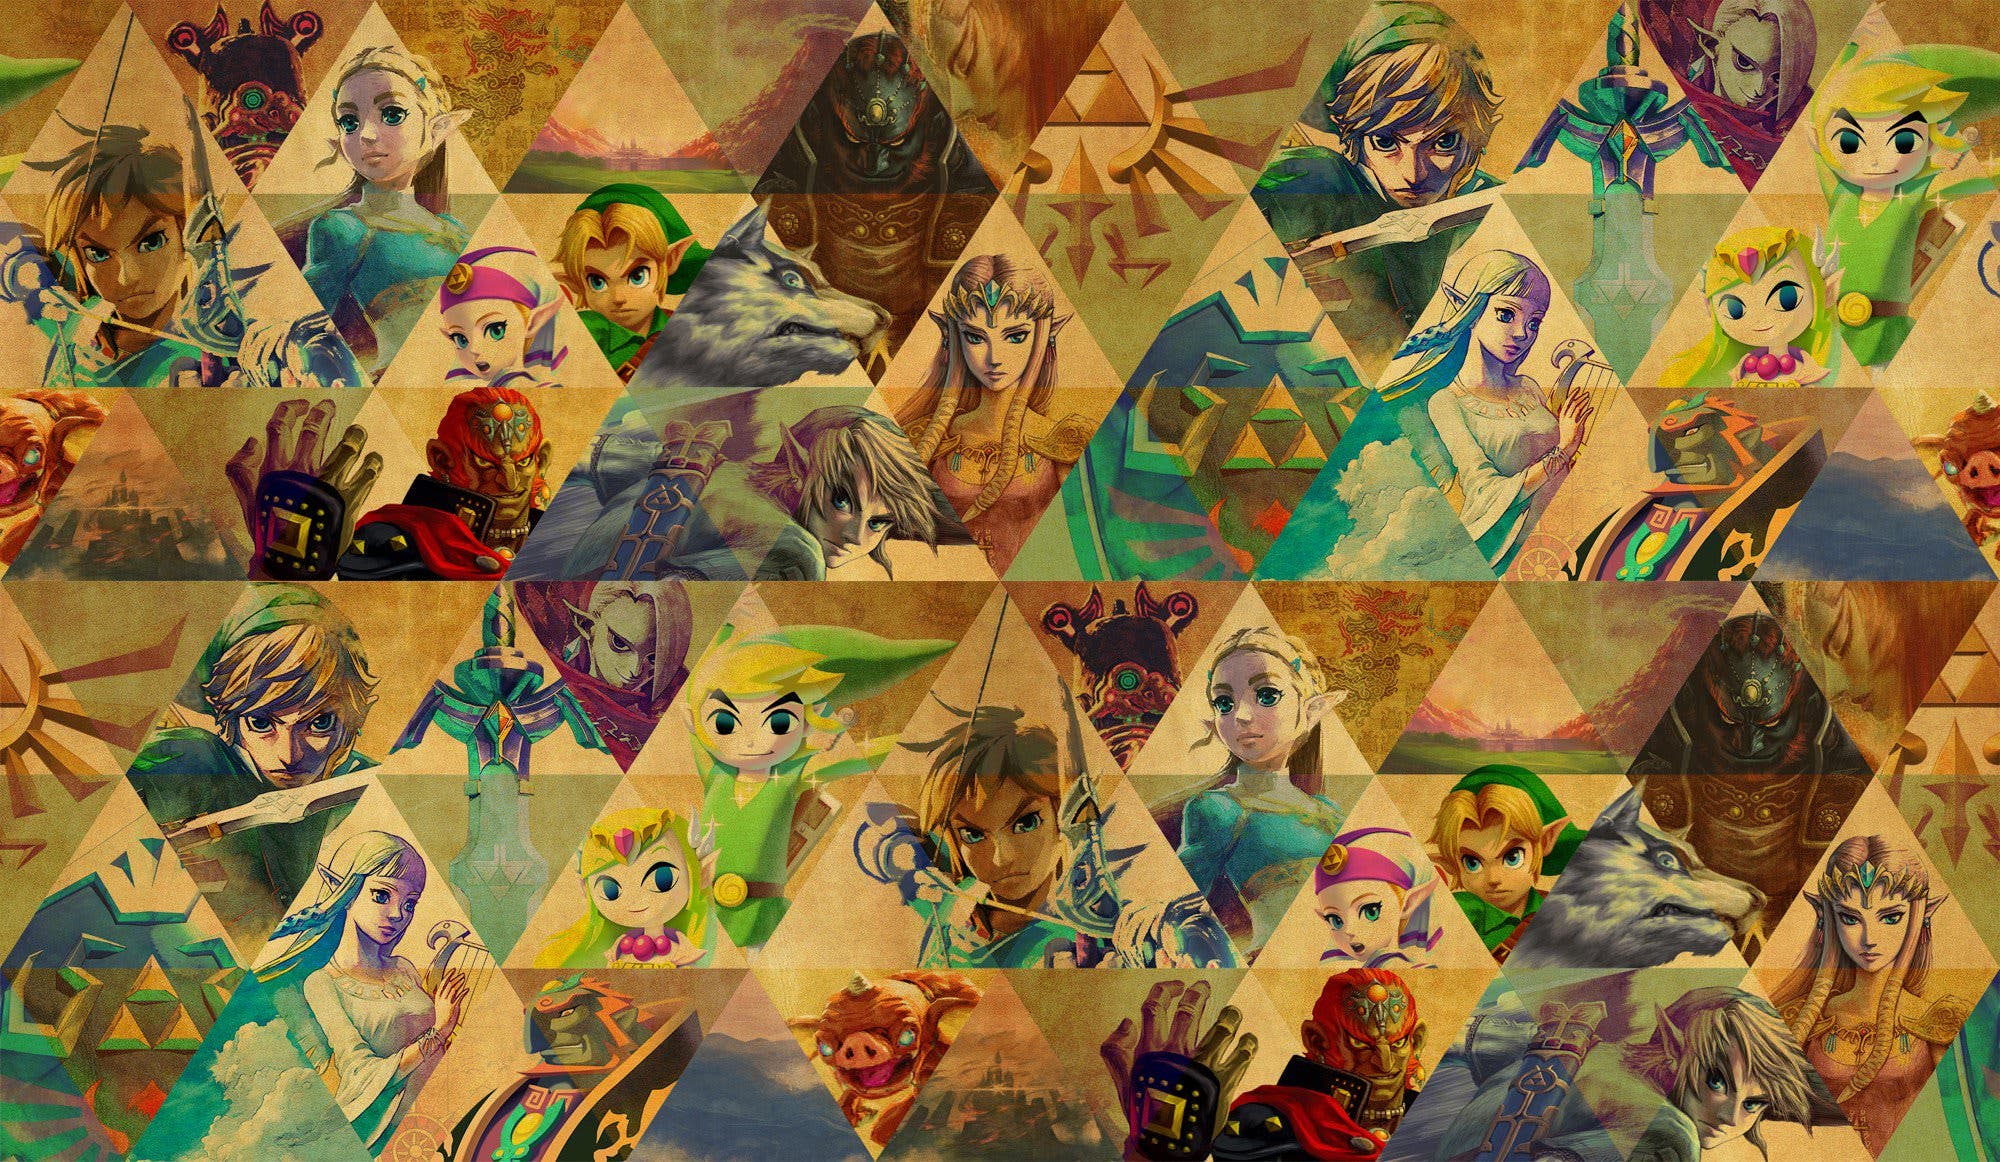 [Act.] Nuevo arte y bocetos de The Legend of Zelda procedentes de la Japan Expo